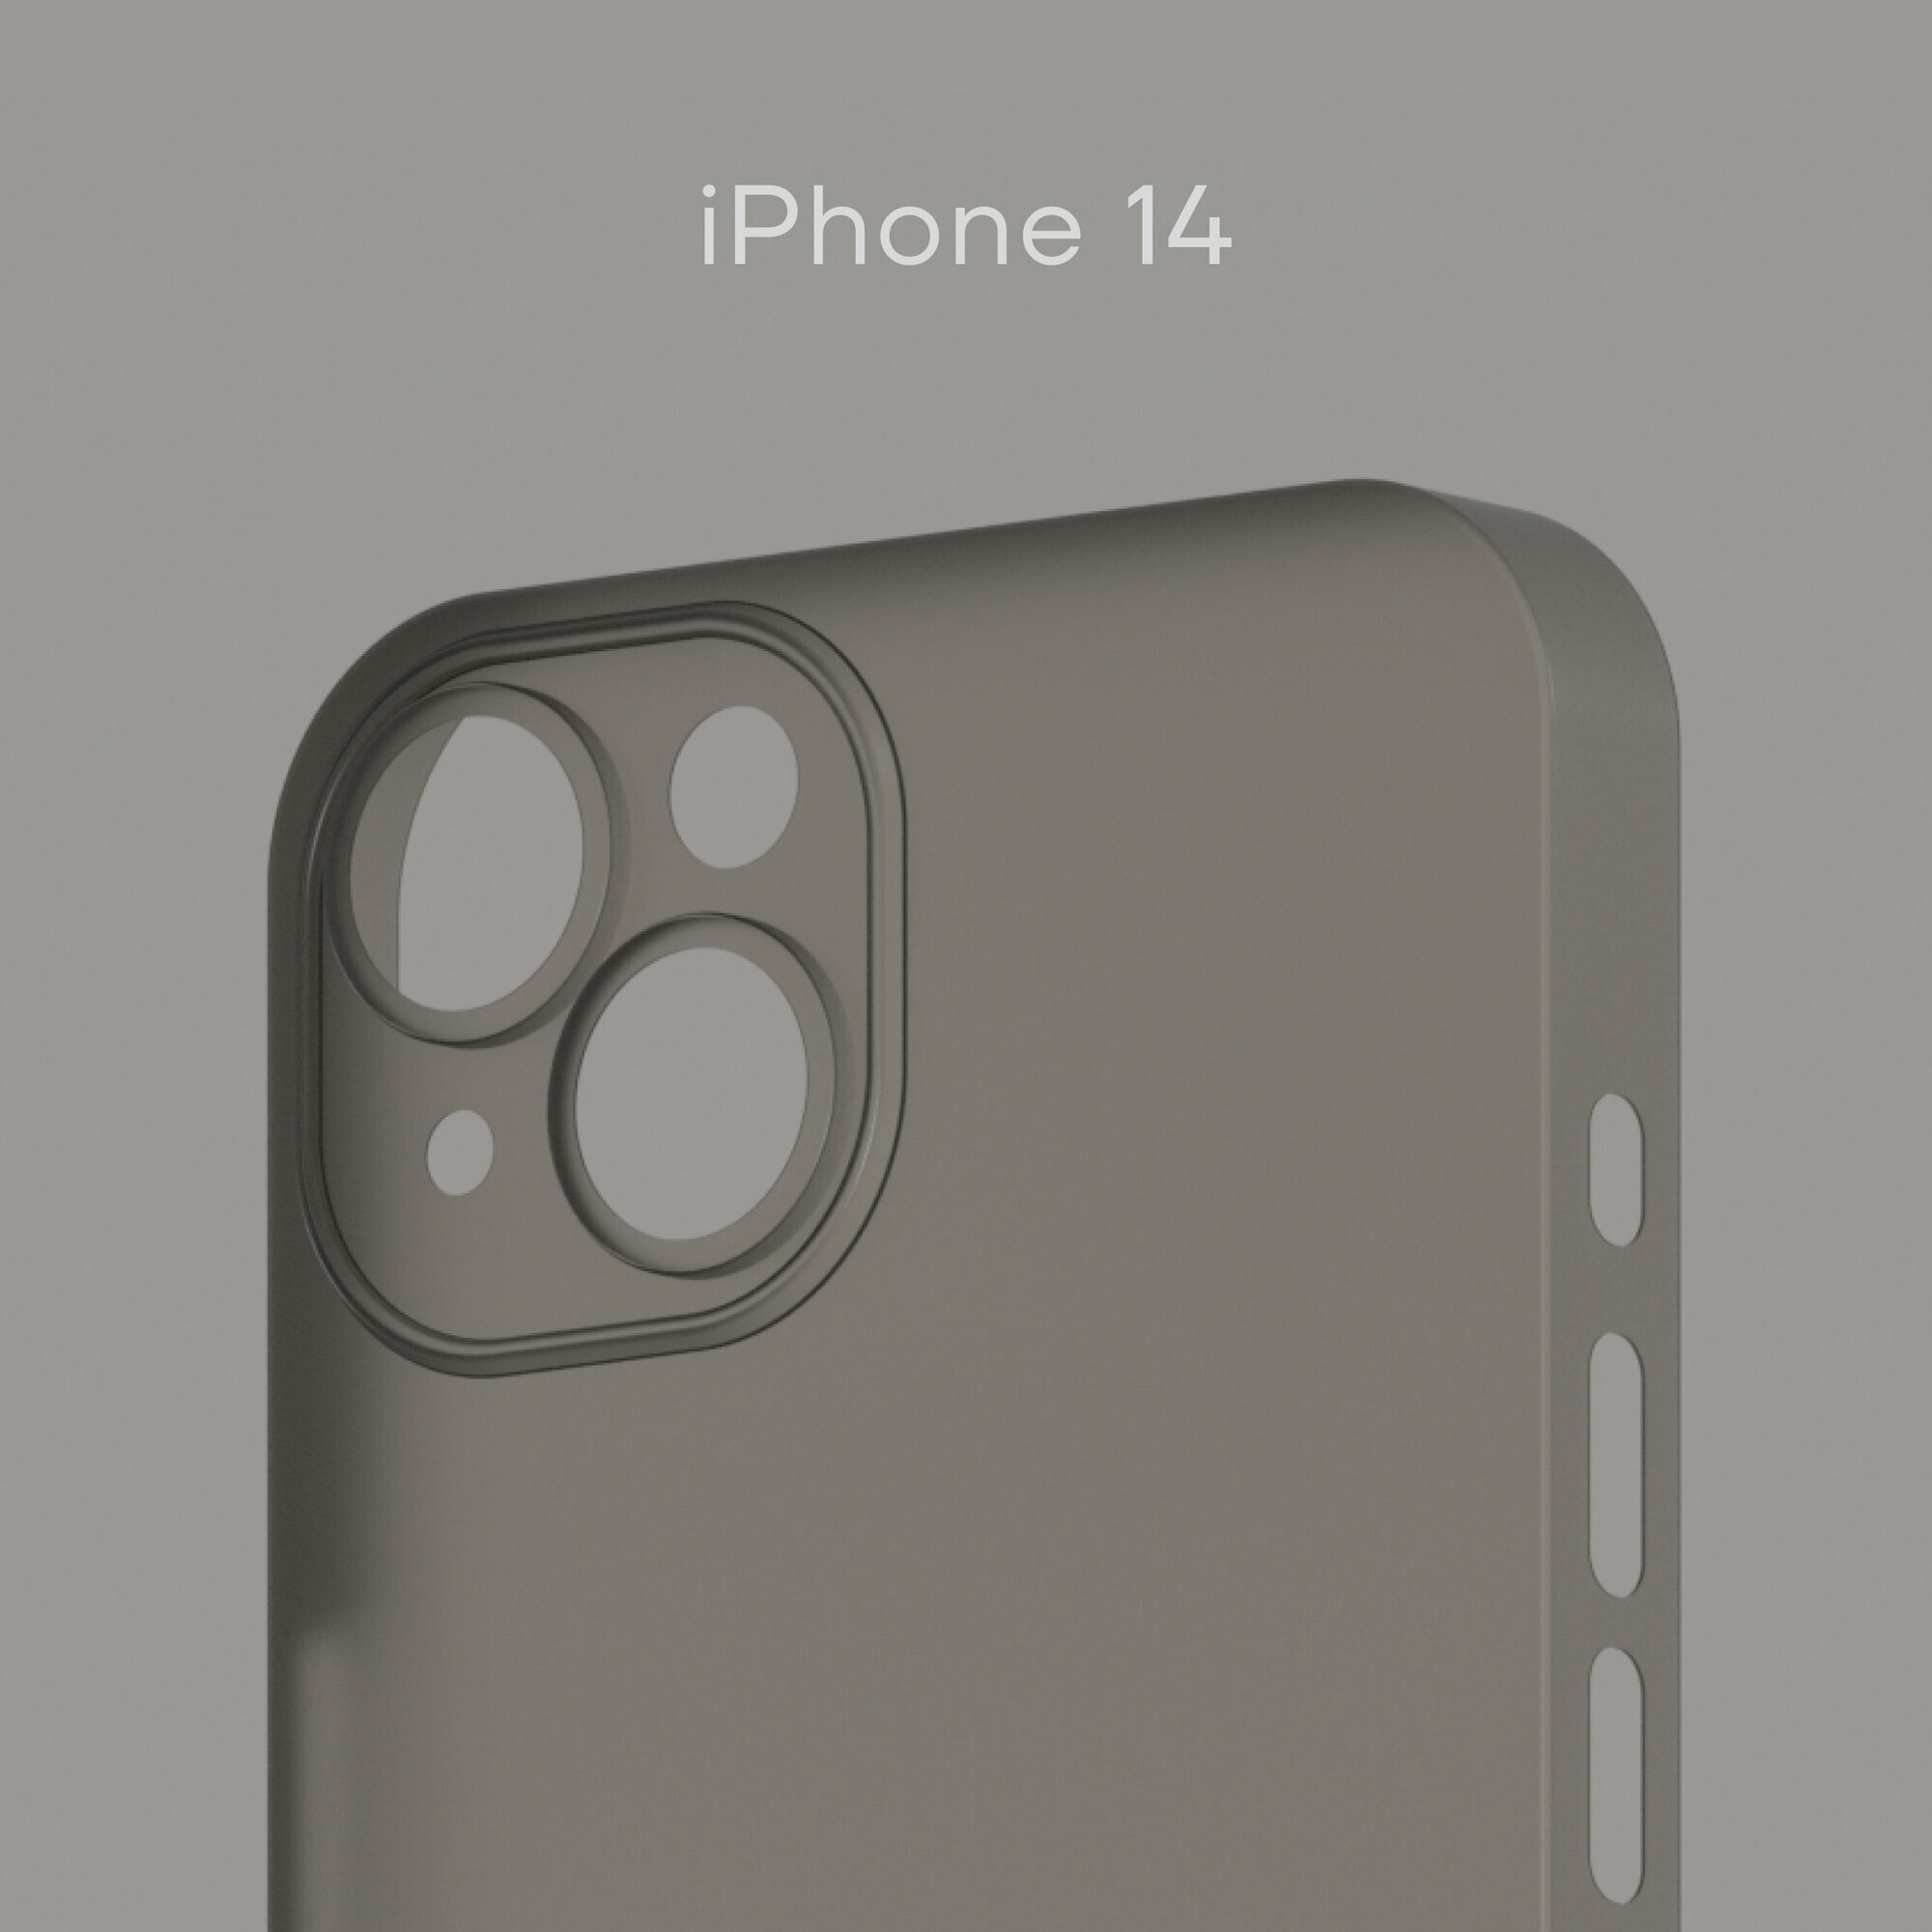 Тонкий чехол Уголок Air Case для iPhone 14 / Айфон 14 толщиной 0,3 мм, прозрачный, матовый, пластиковый